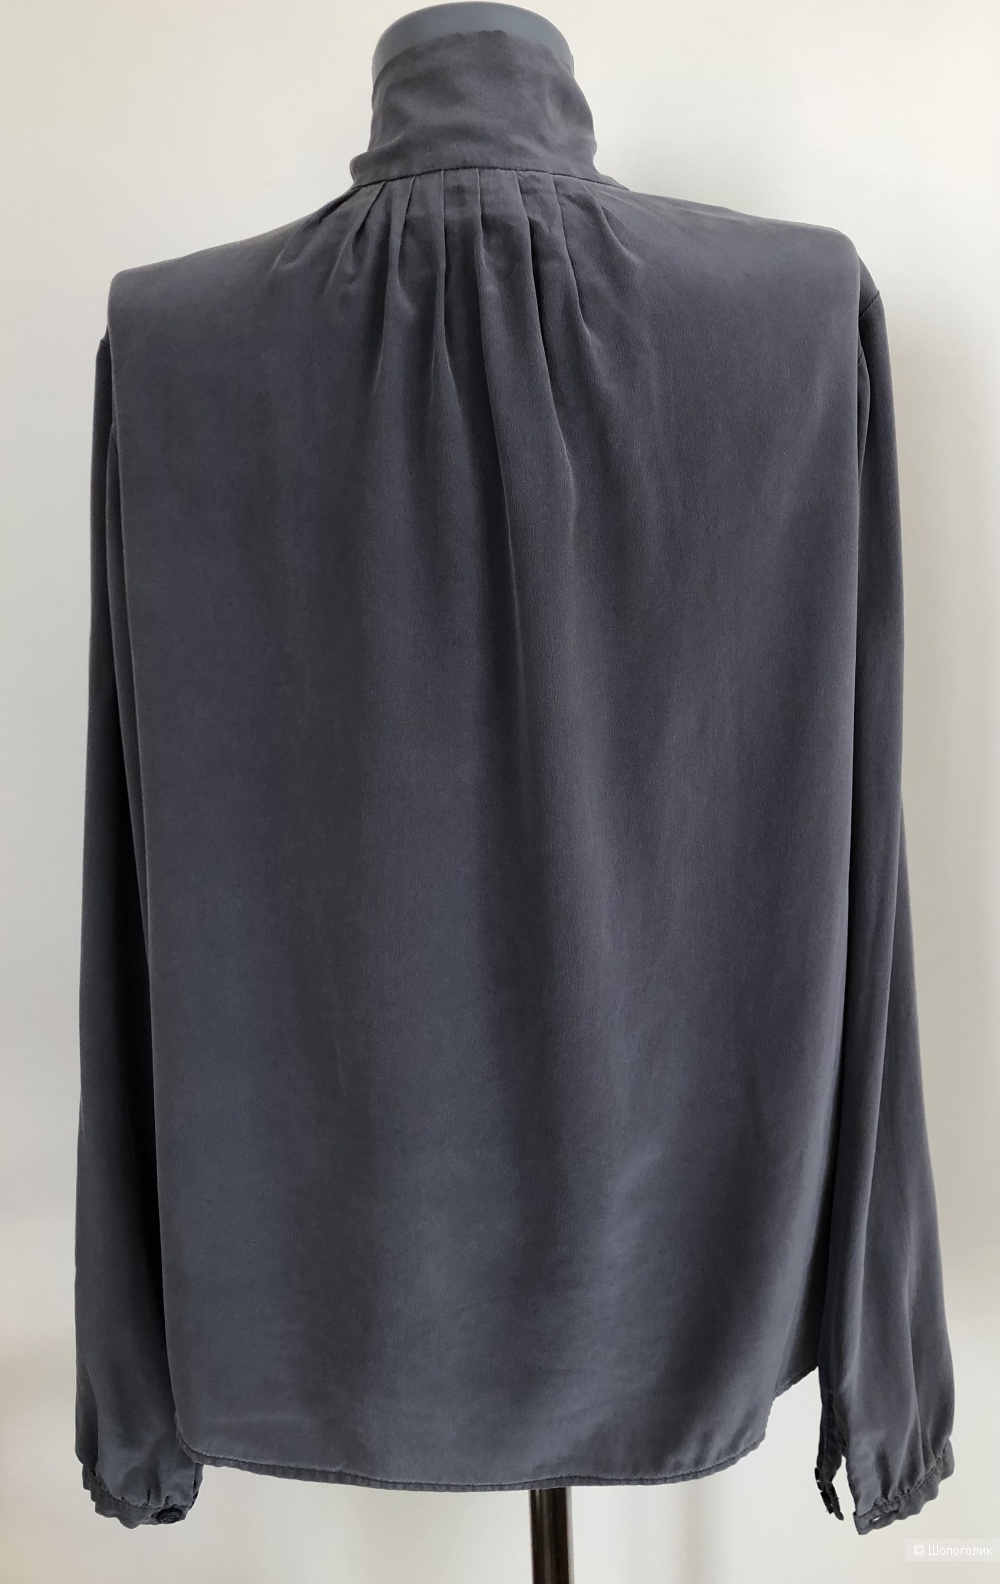 Шелковая блуза   MADELEINE размер 44-46